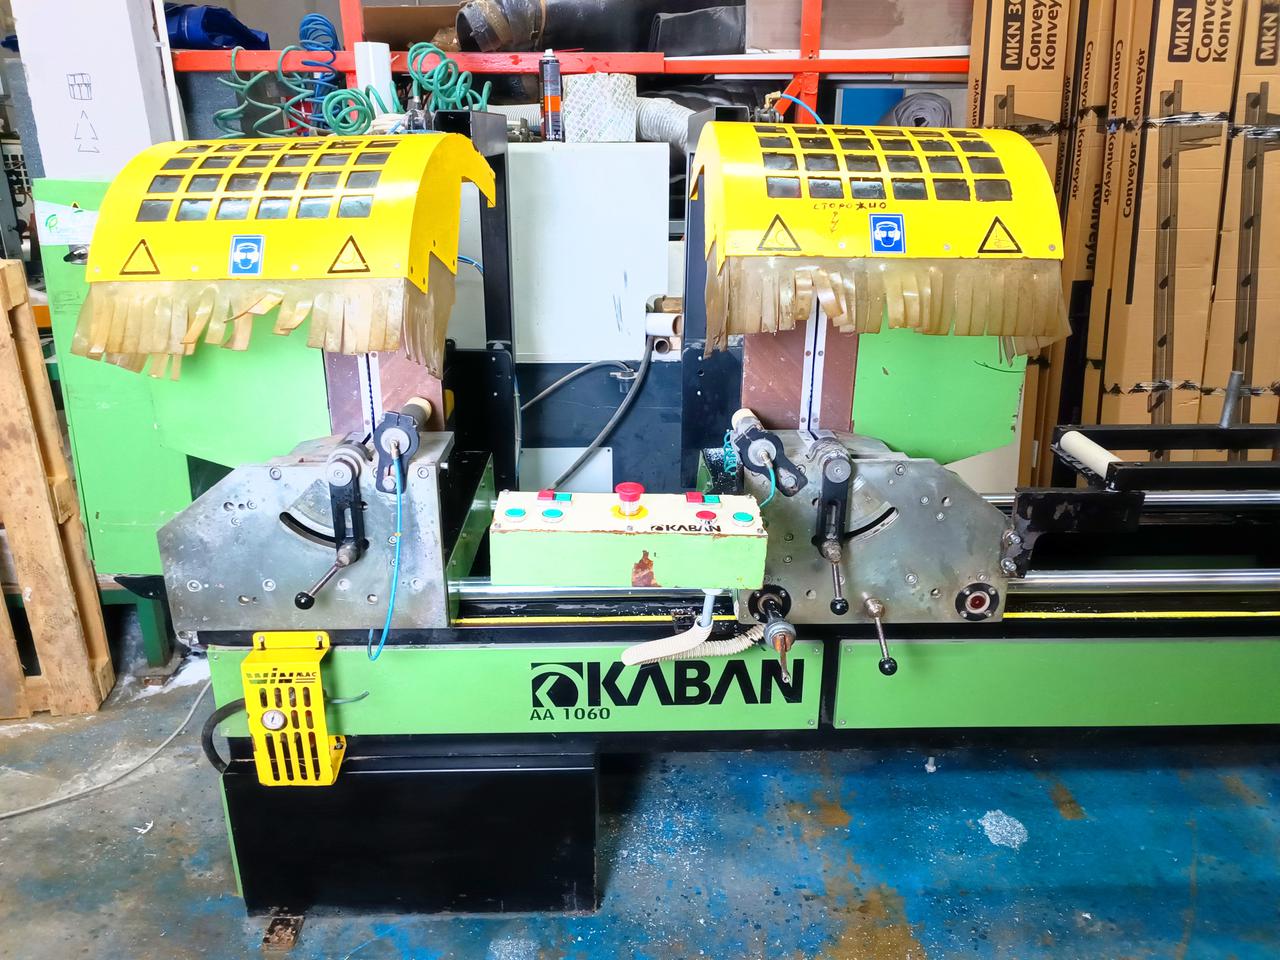 KABAN AA 1060 Двухголовочная пила с фронтальной подачей пильных дисков для резки профиля из ПВХ и алюминия (Б/У оборудование)